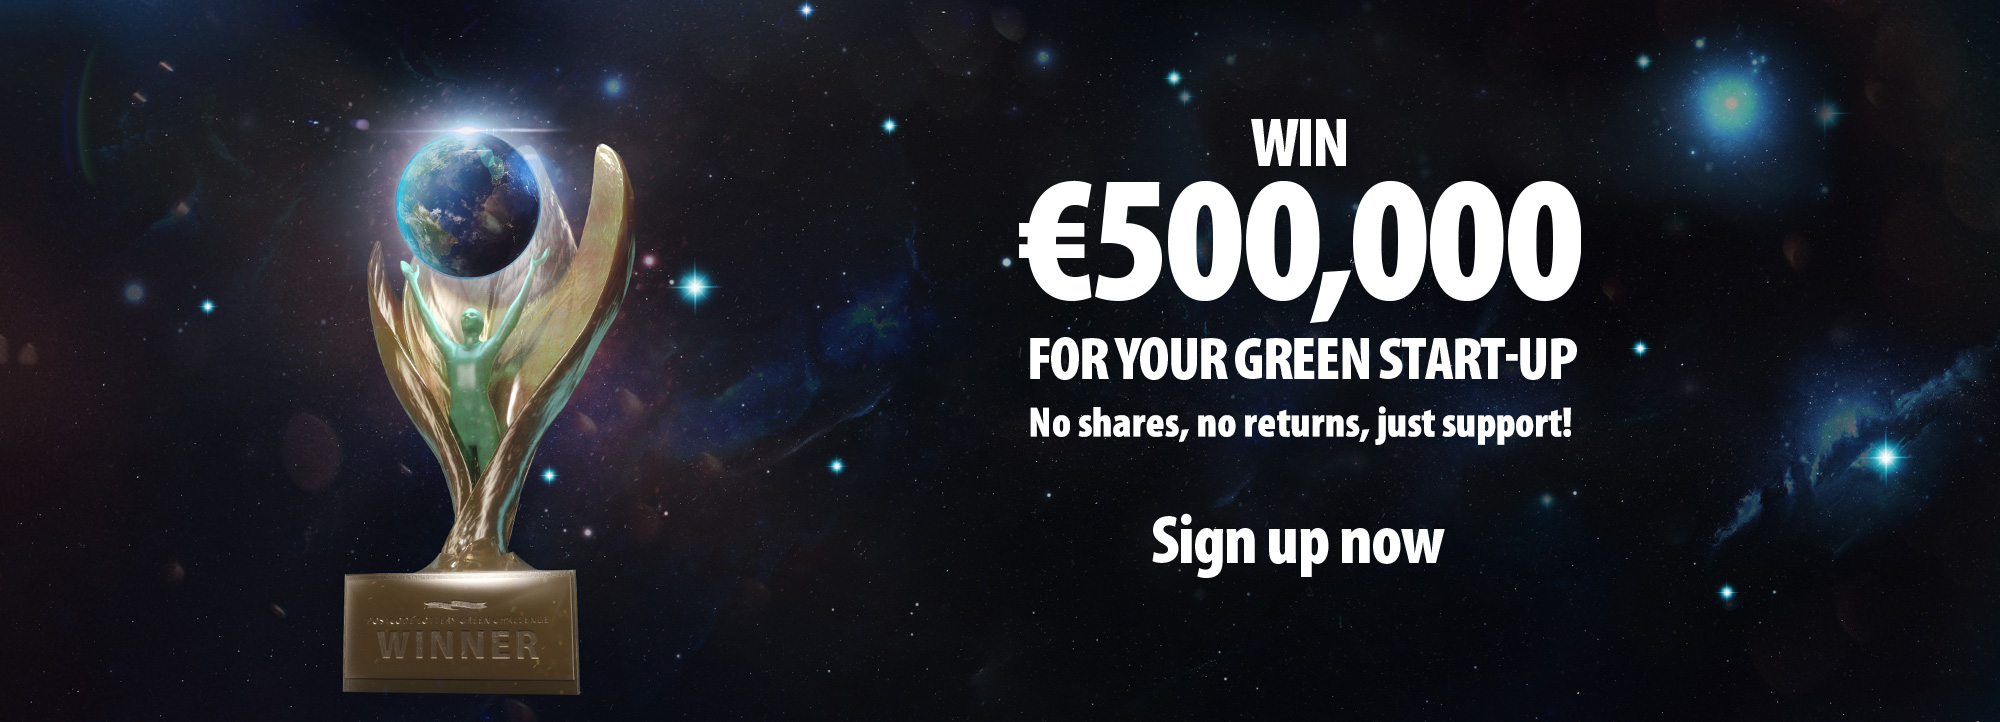 Aktionsbild gewinne 500000 Euro für Green Startup